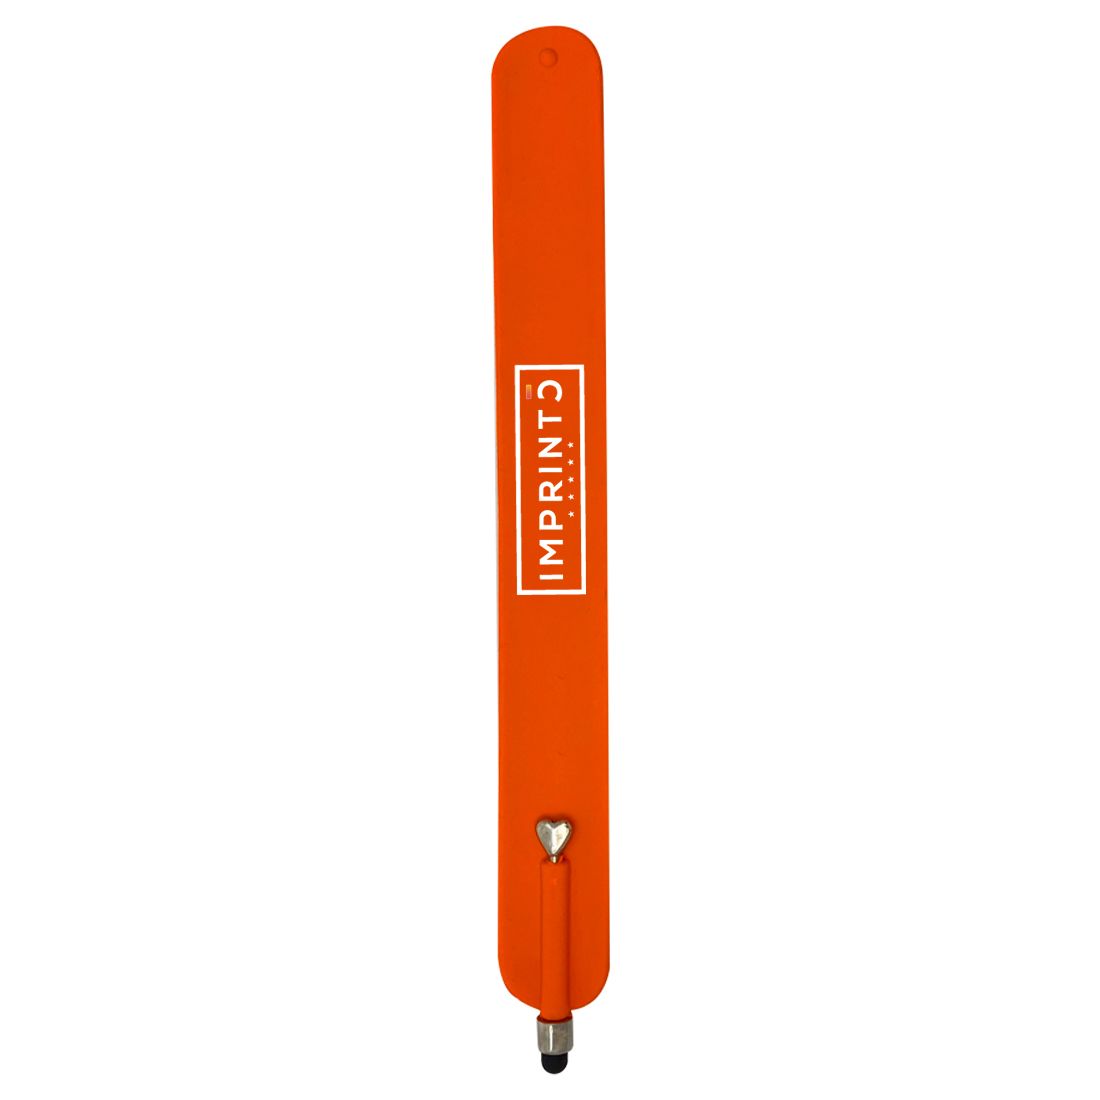 Pulseras Skillz Slap personalizadas con lápiz óptico